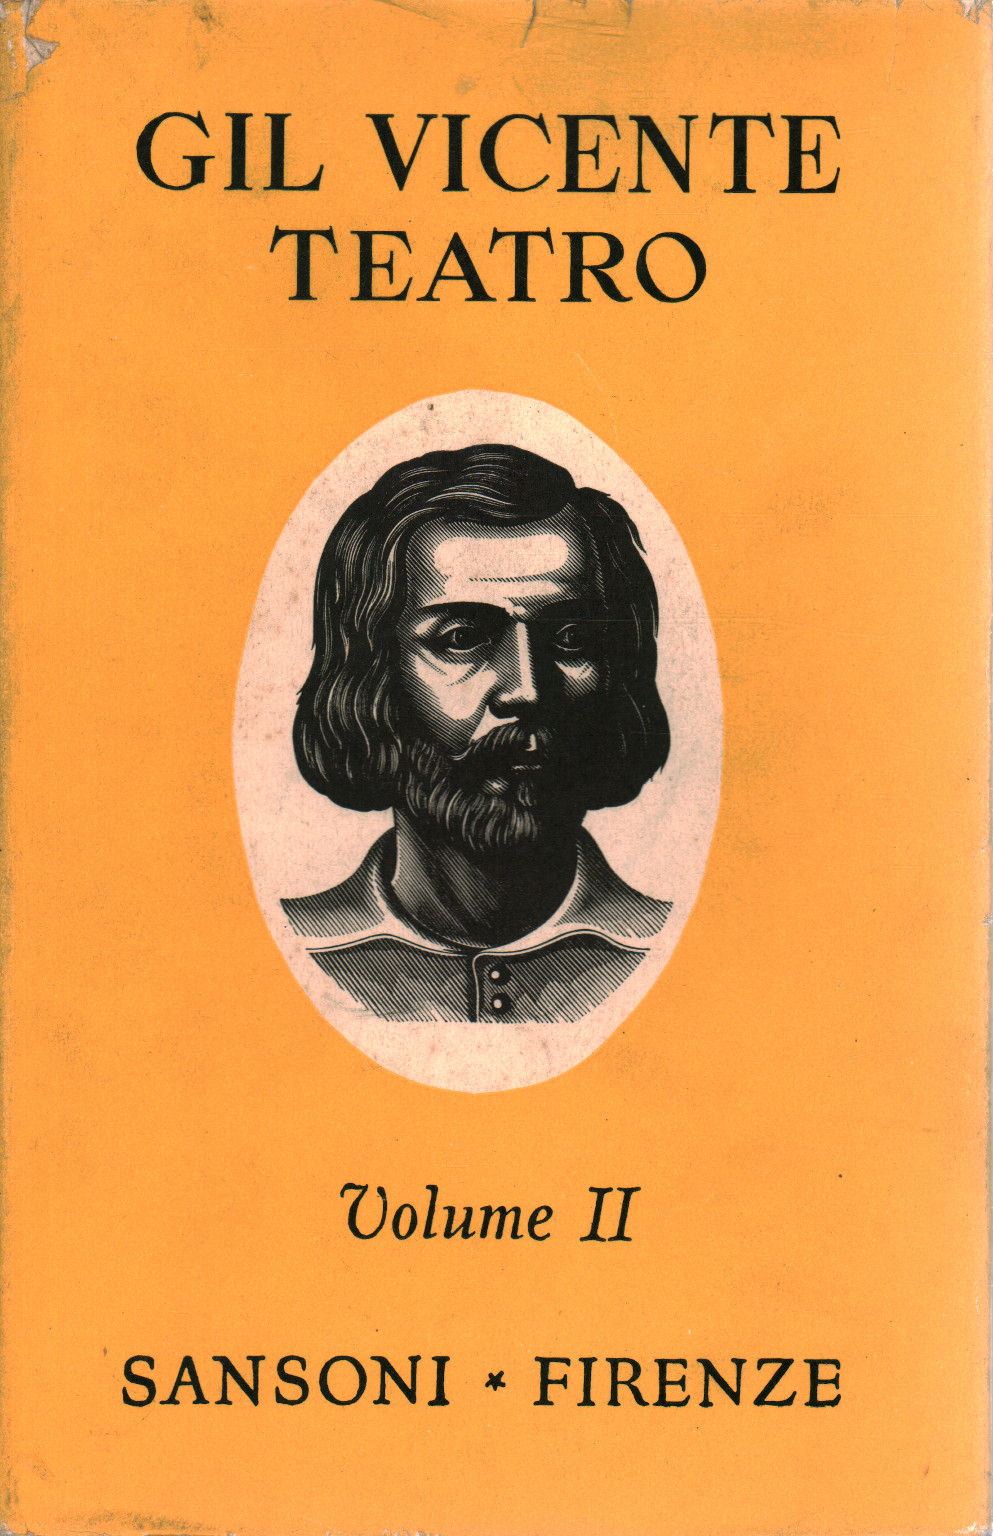 Teatro - vol. II, s.a.